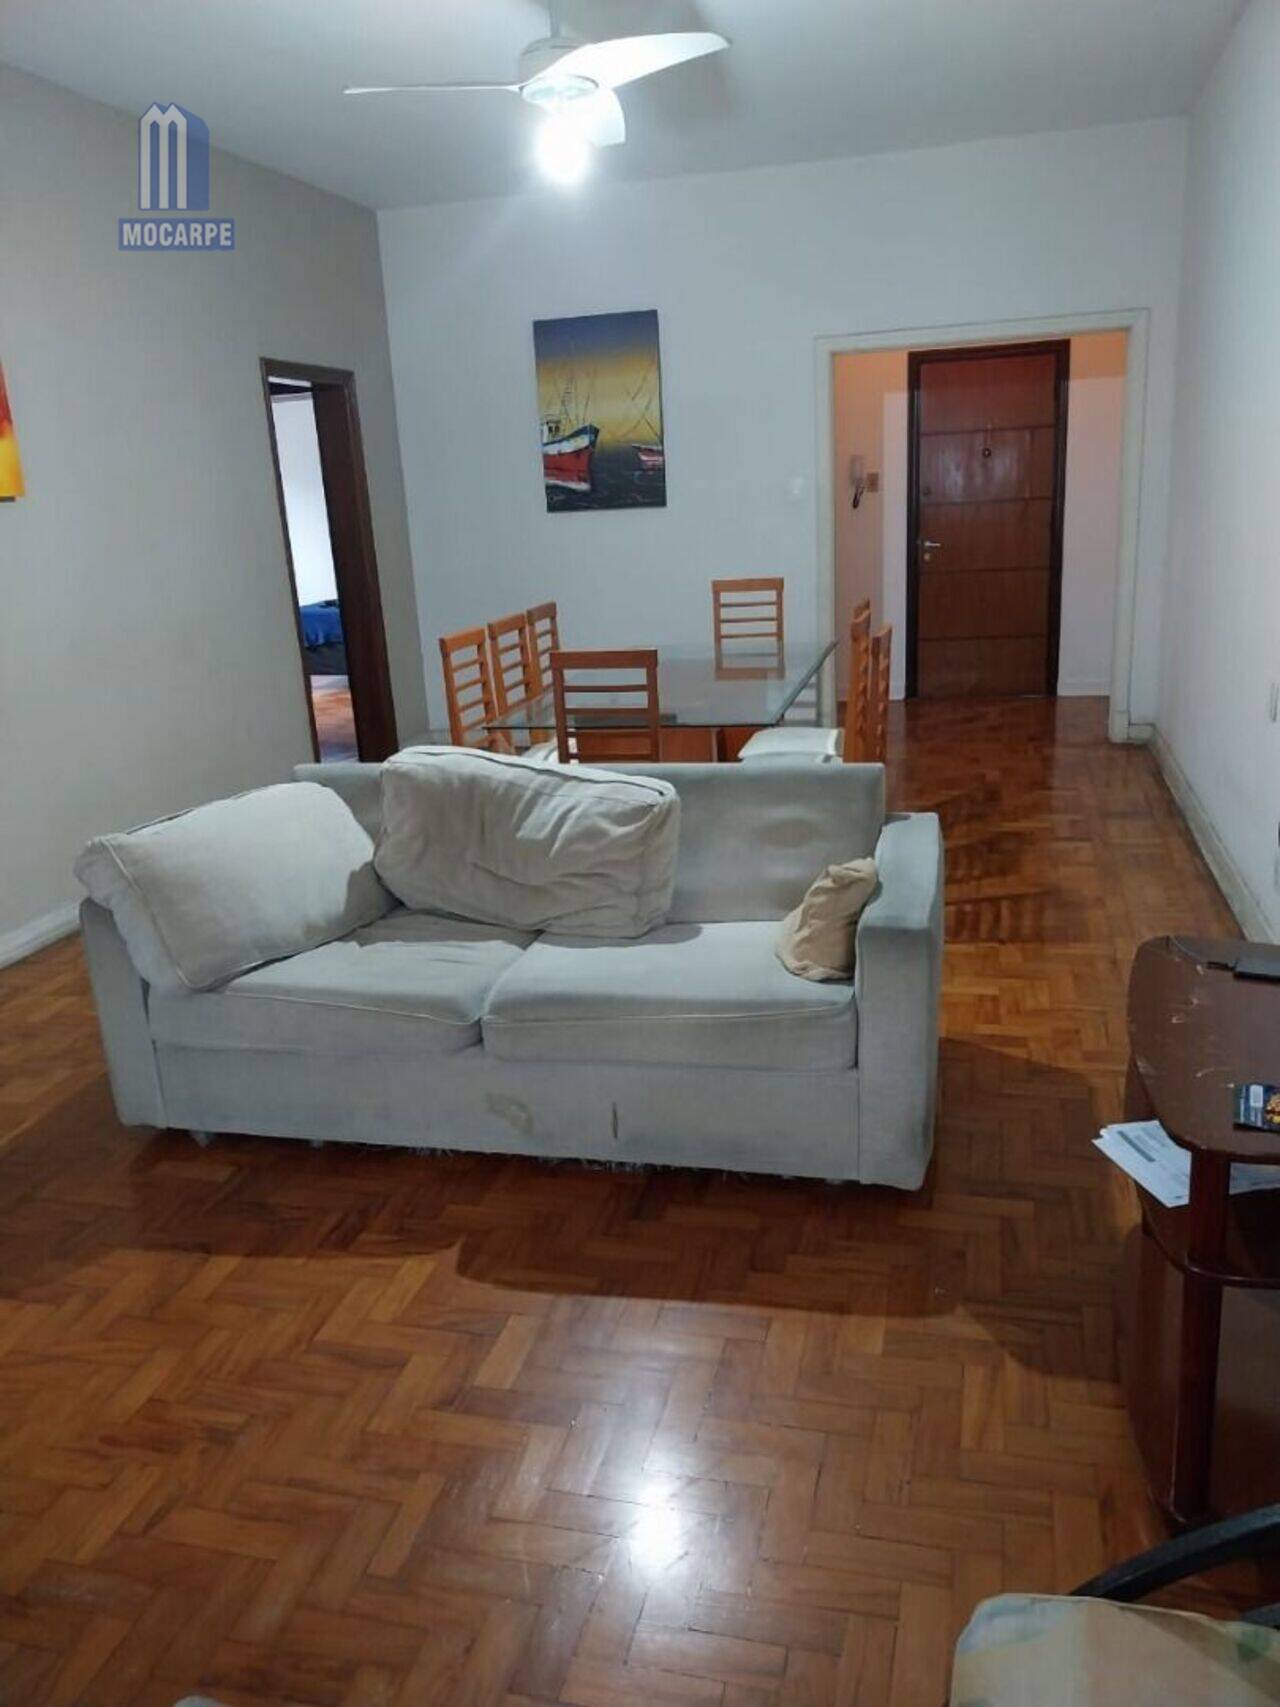 Apartamento Itararé, São Vicente - SP